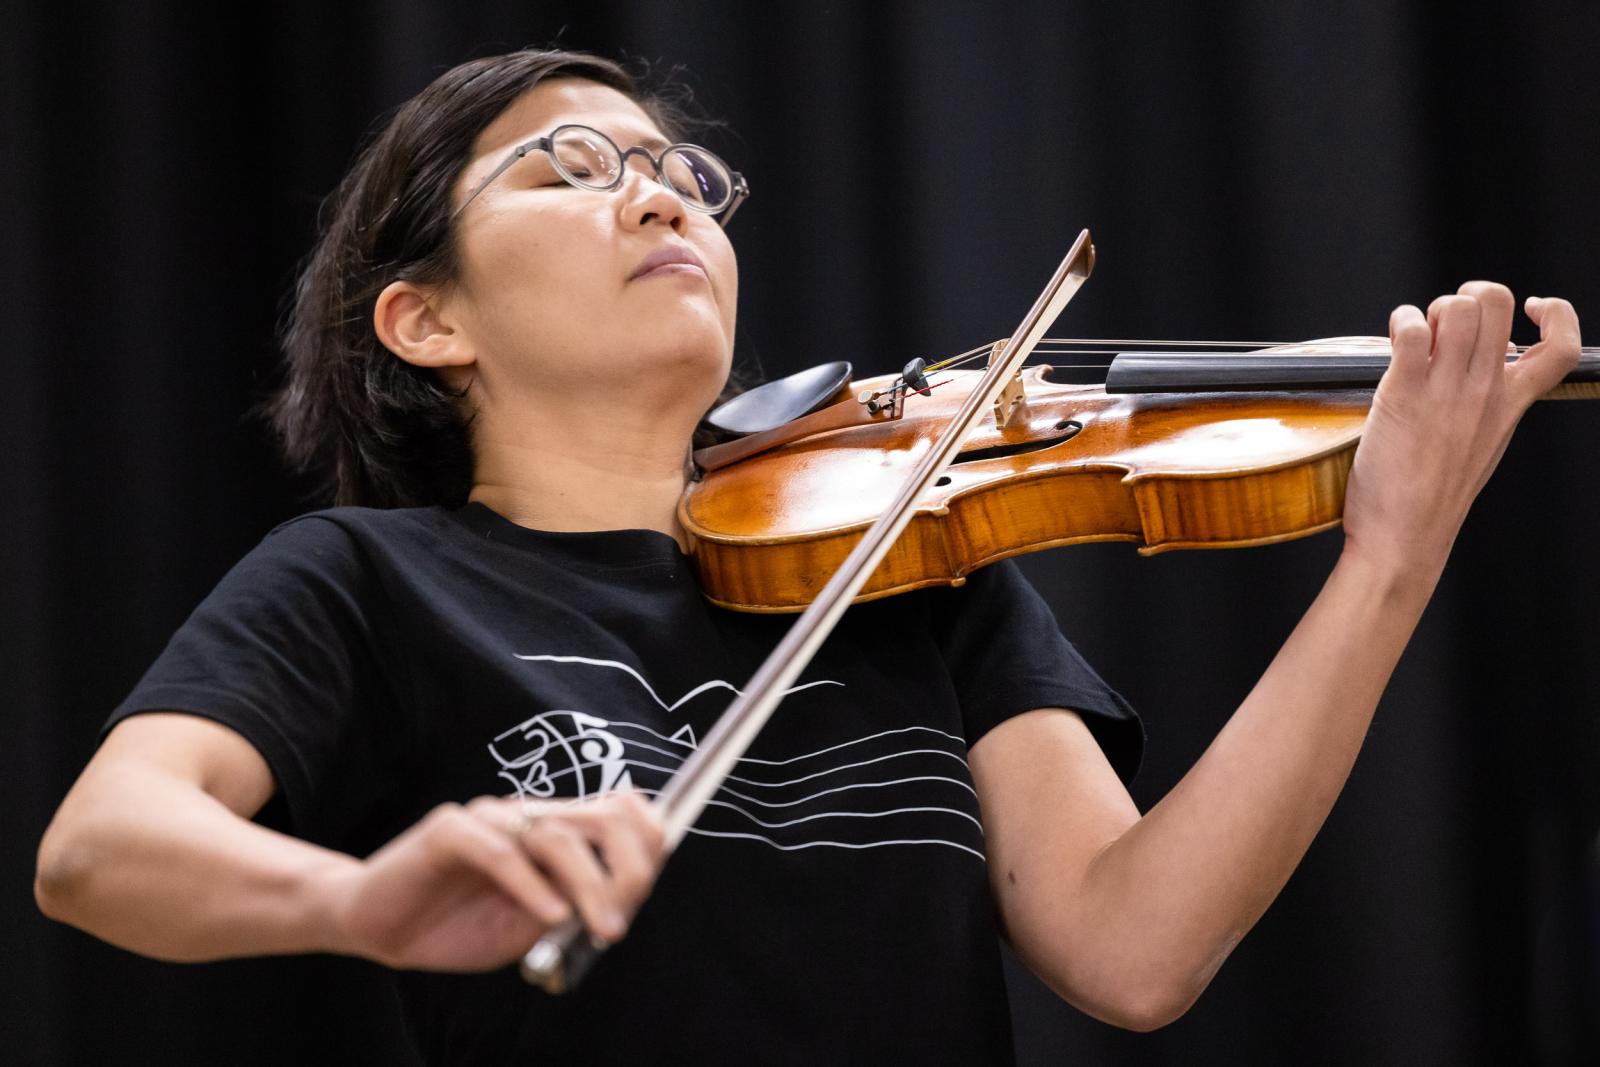 Clara Kim plays violin for the Argus Quartet